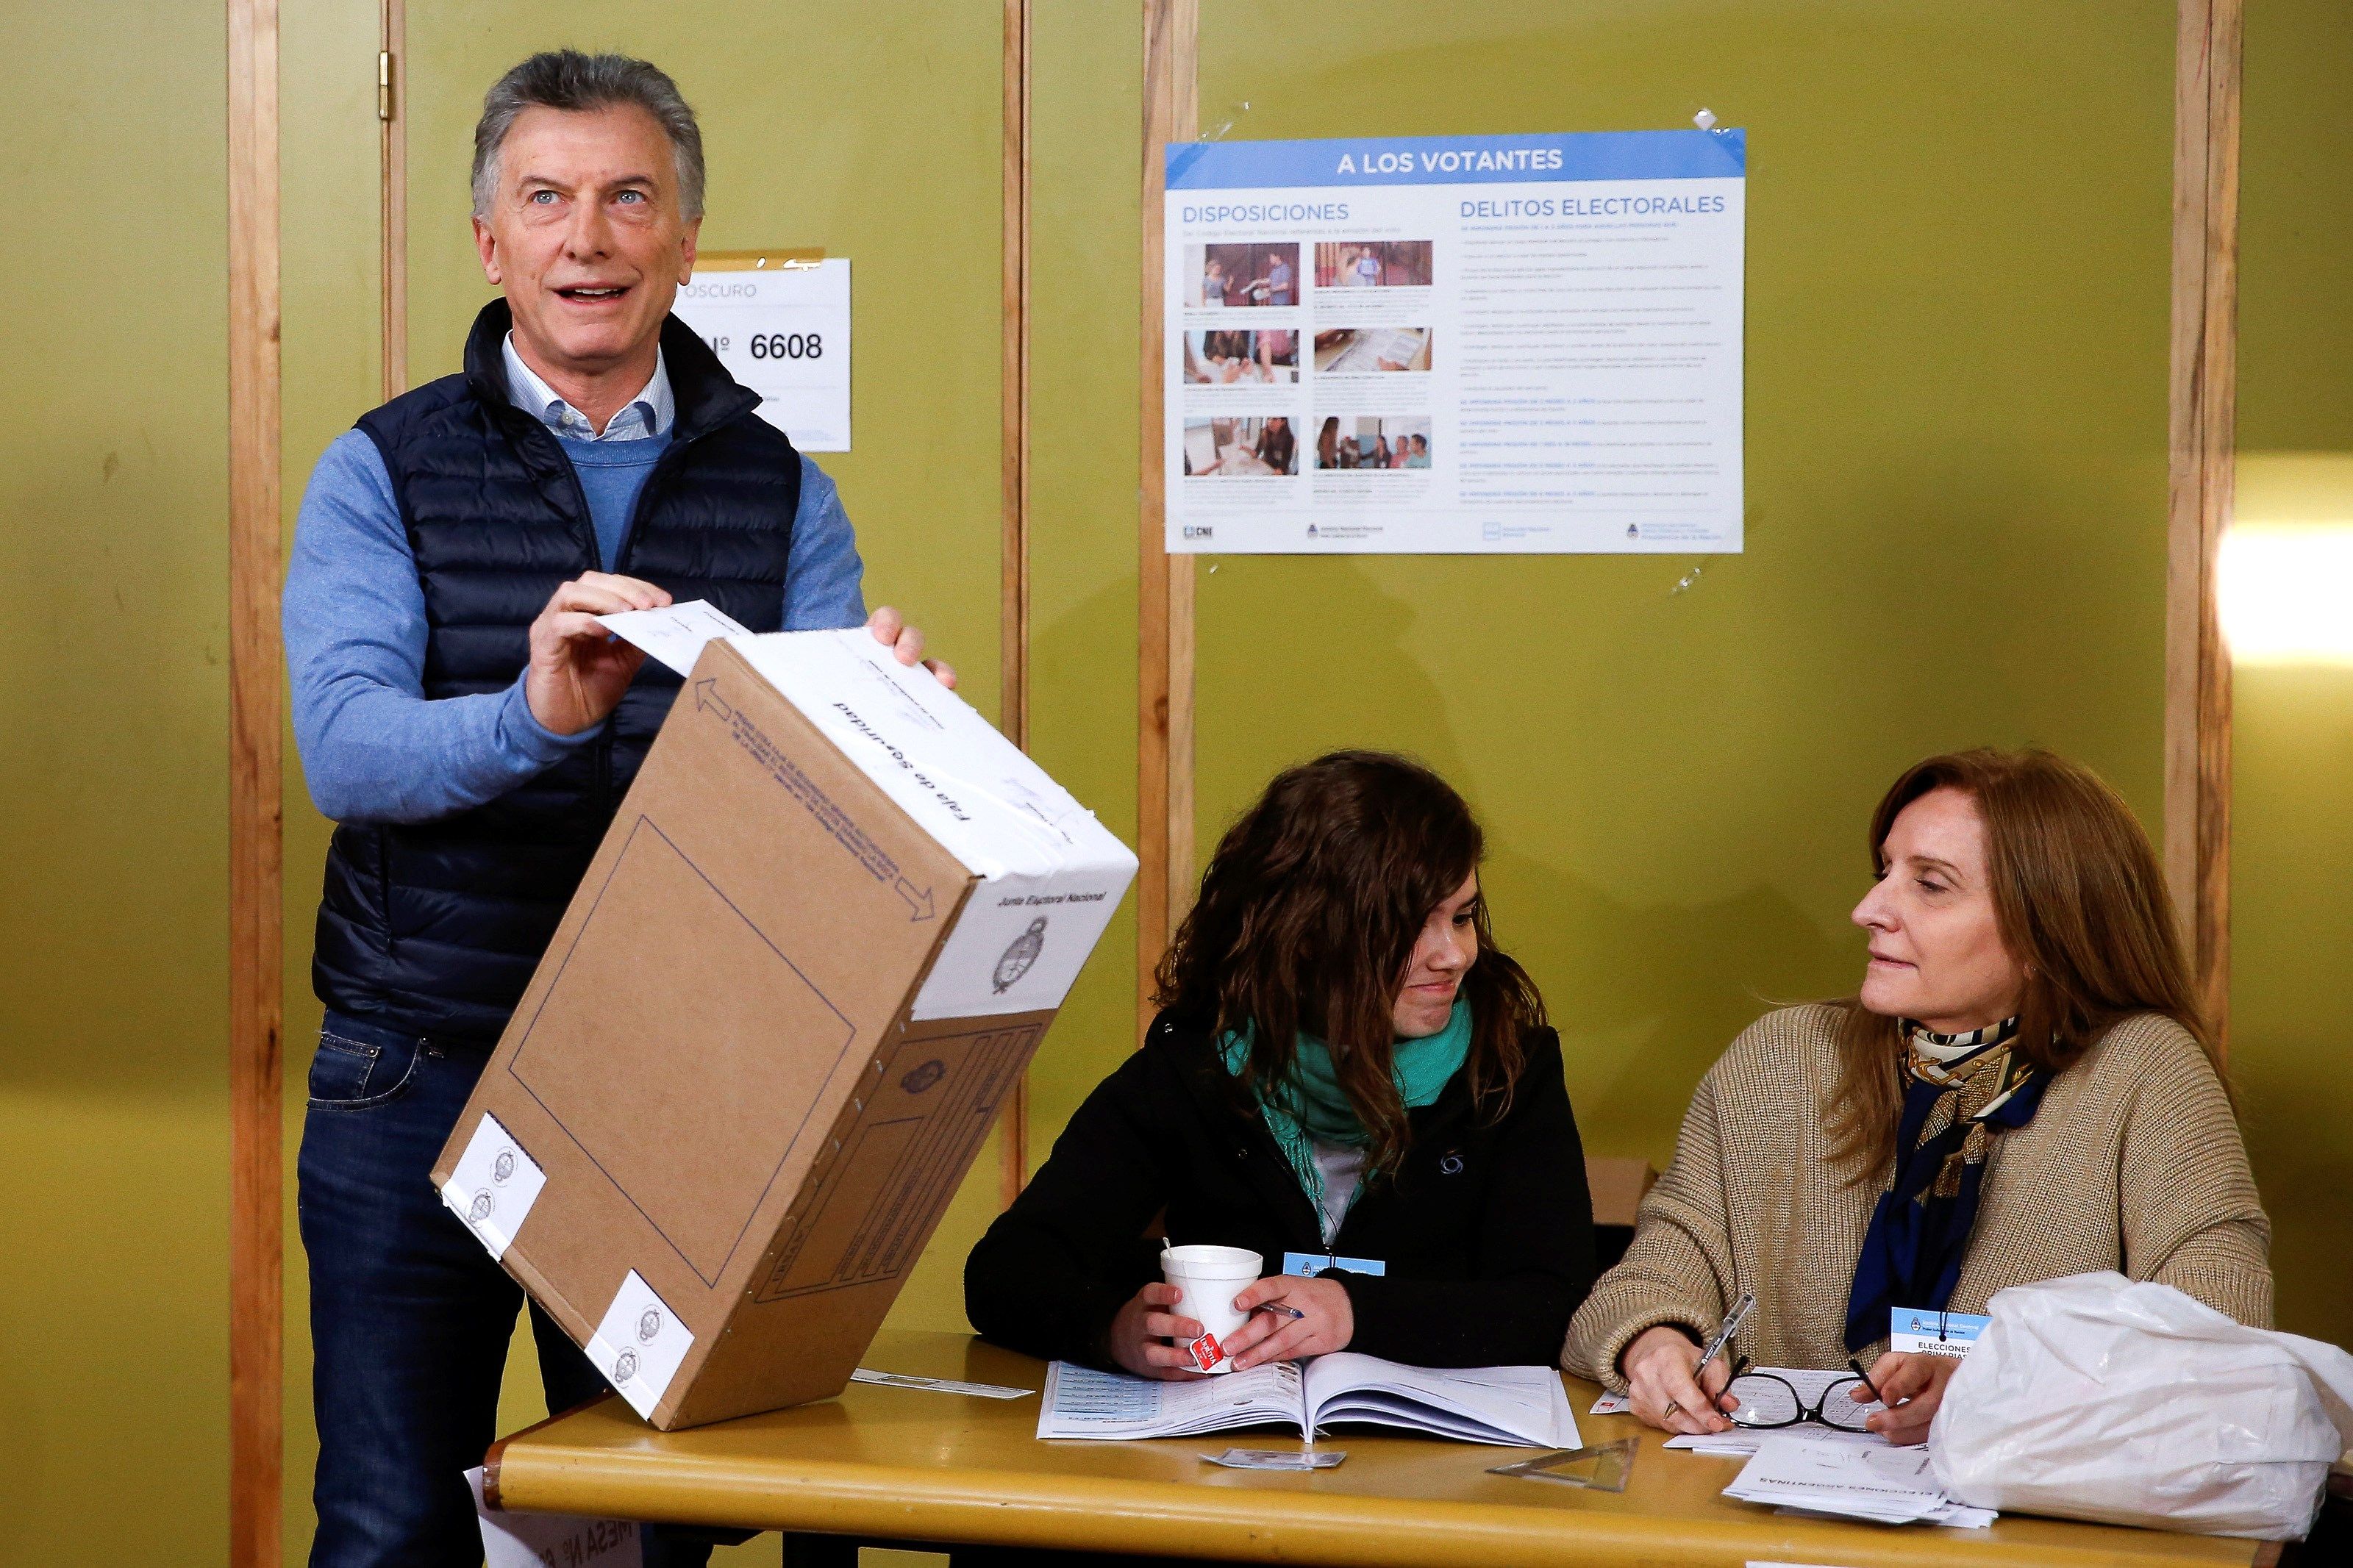 El presidente de Argentina, Mauricio Macri, vota en uno de los centros de votación  en Buenos Aires, Argentina. (Foto Prensa Libre: EFE)